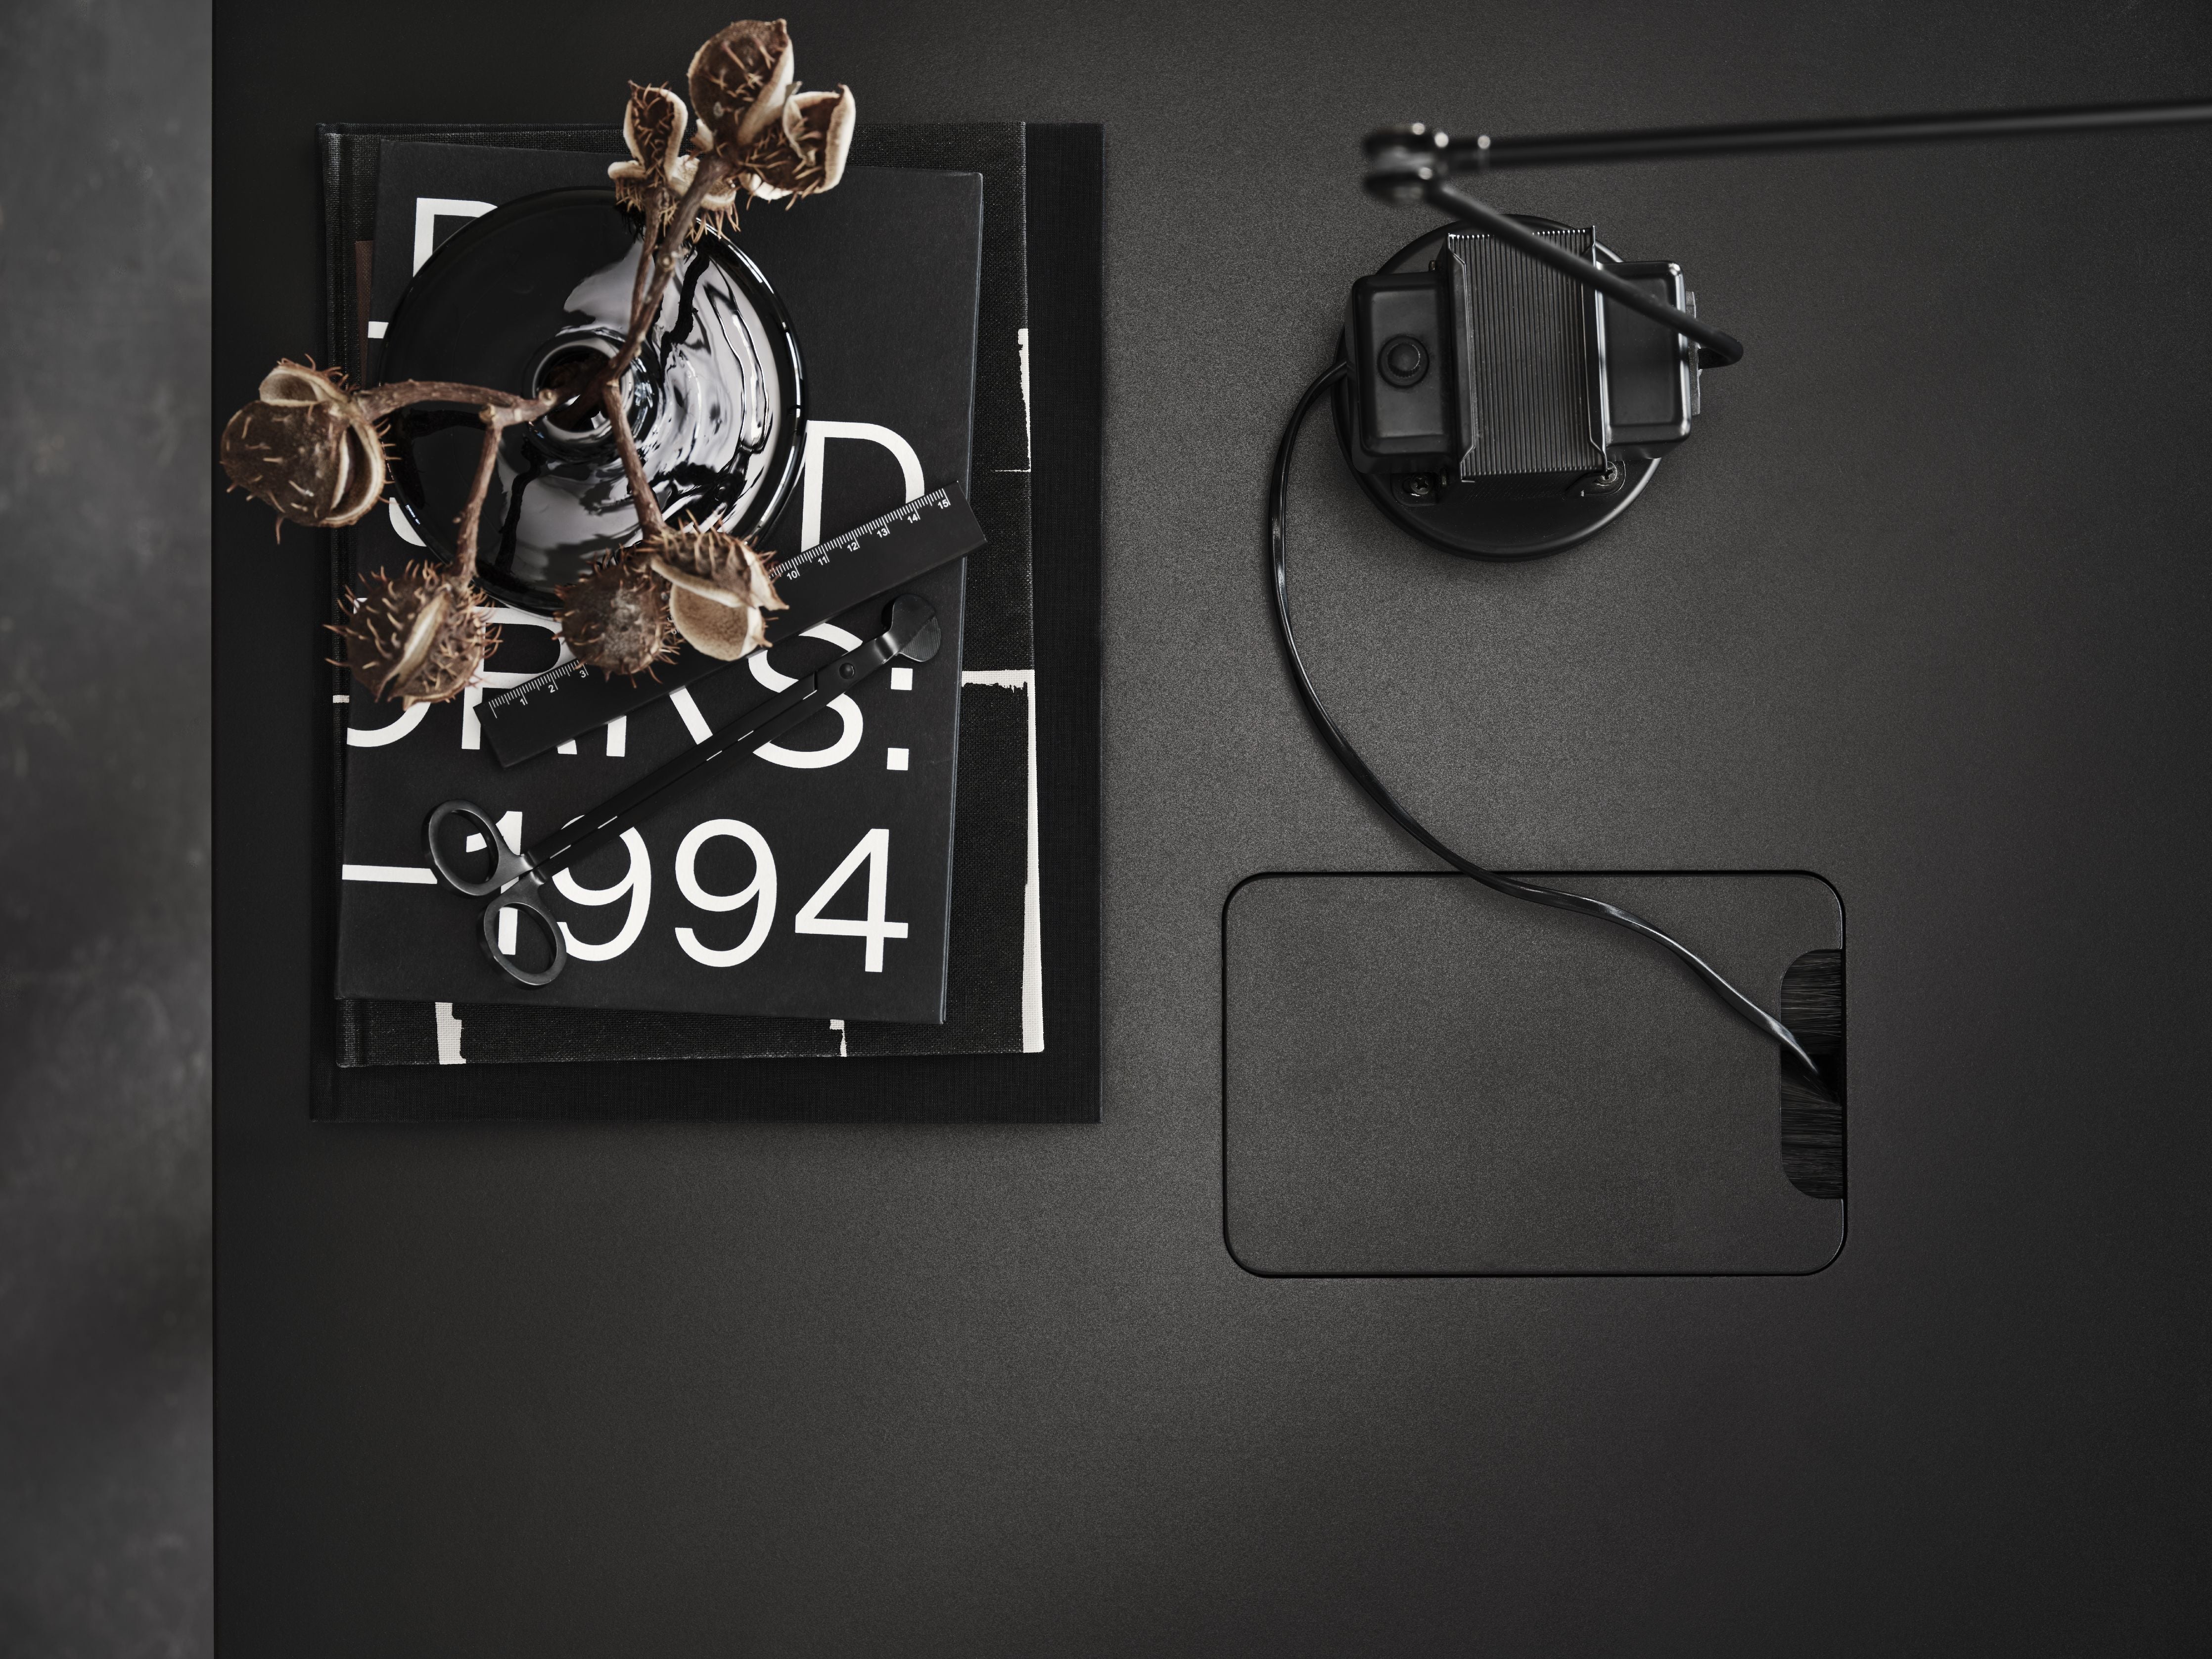 String Furniture Tableau de conférence réglable en hauteur 90x180 cm, noir / noir